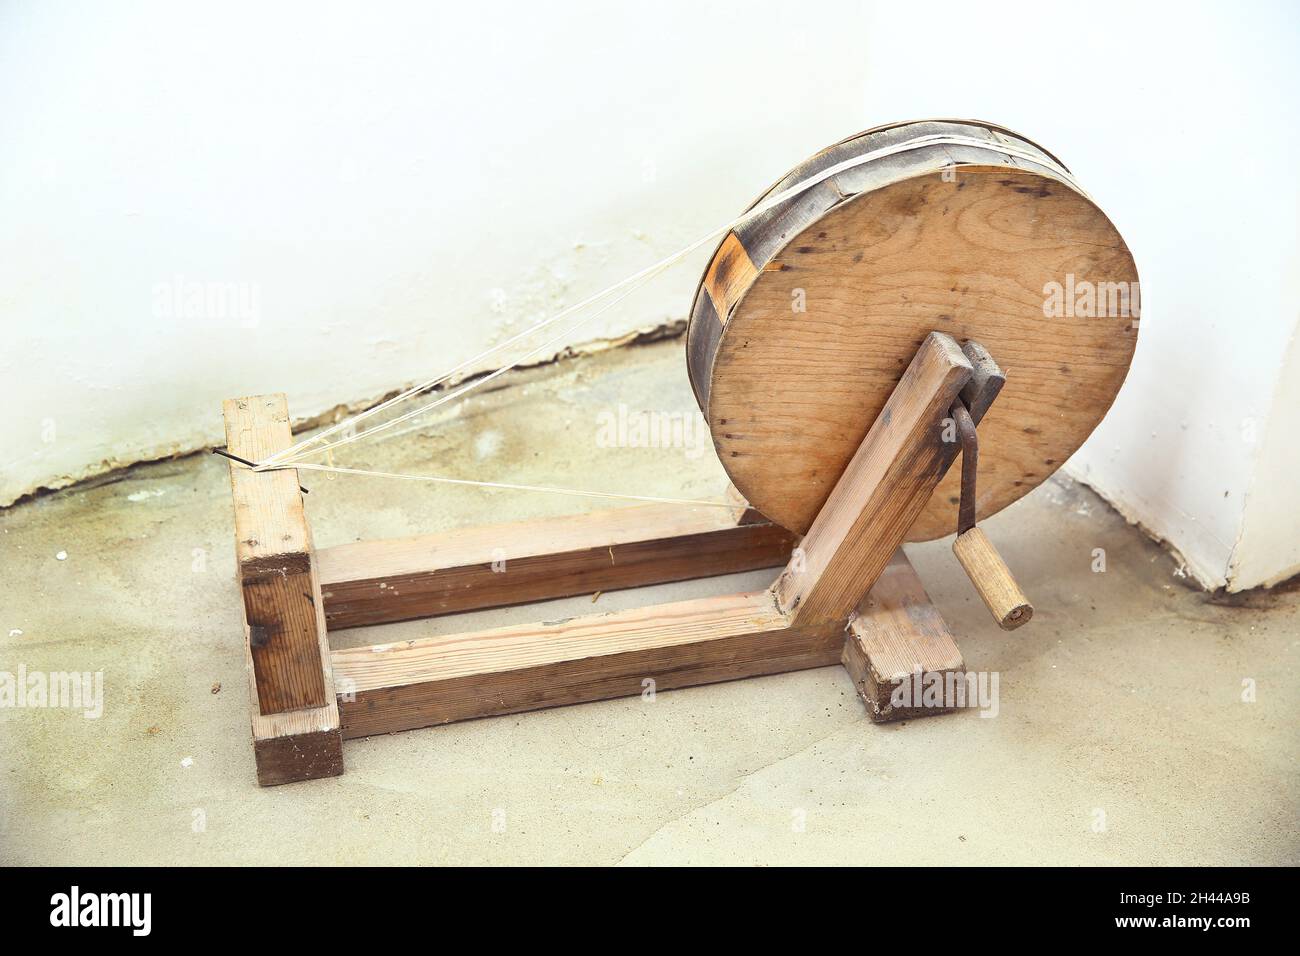 Un ancien outil rond en bois pour la fabrication de fils de laine .  Fabrication de fil de laine de mouton par roue de rotation traditionnelle .  Filature manuelle de laine à